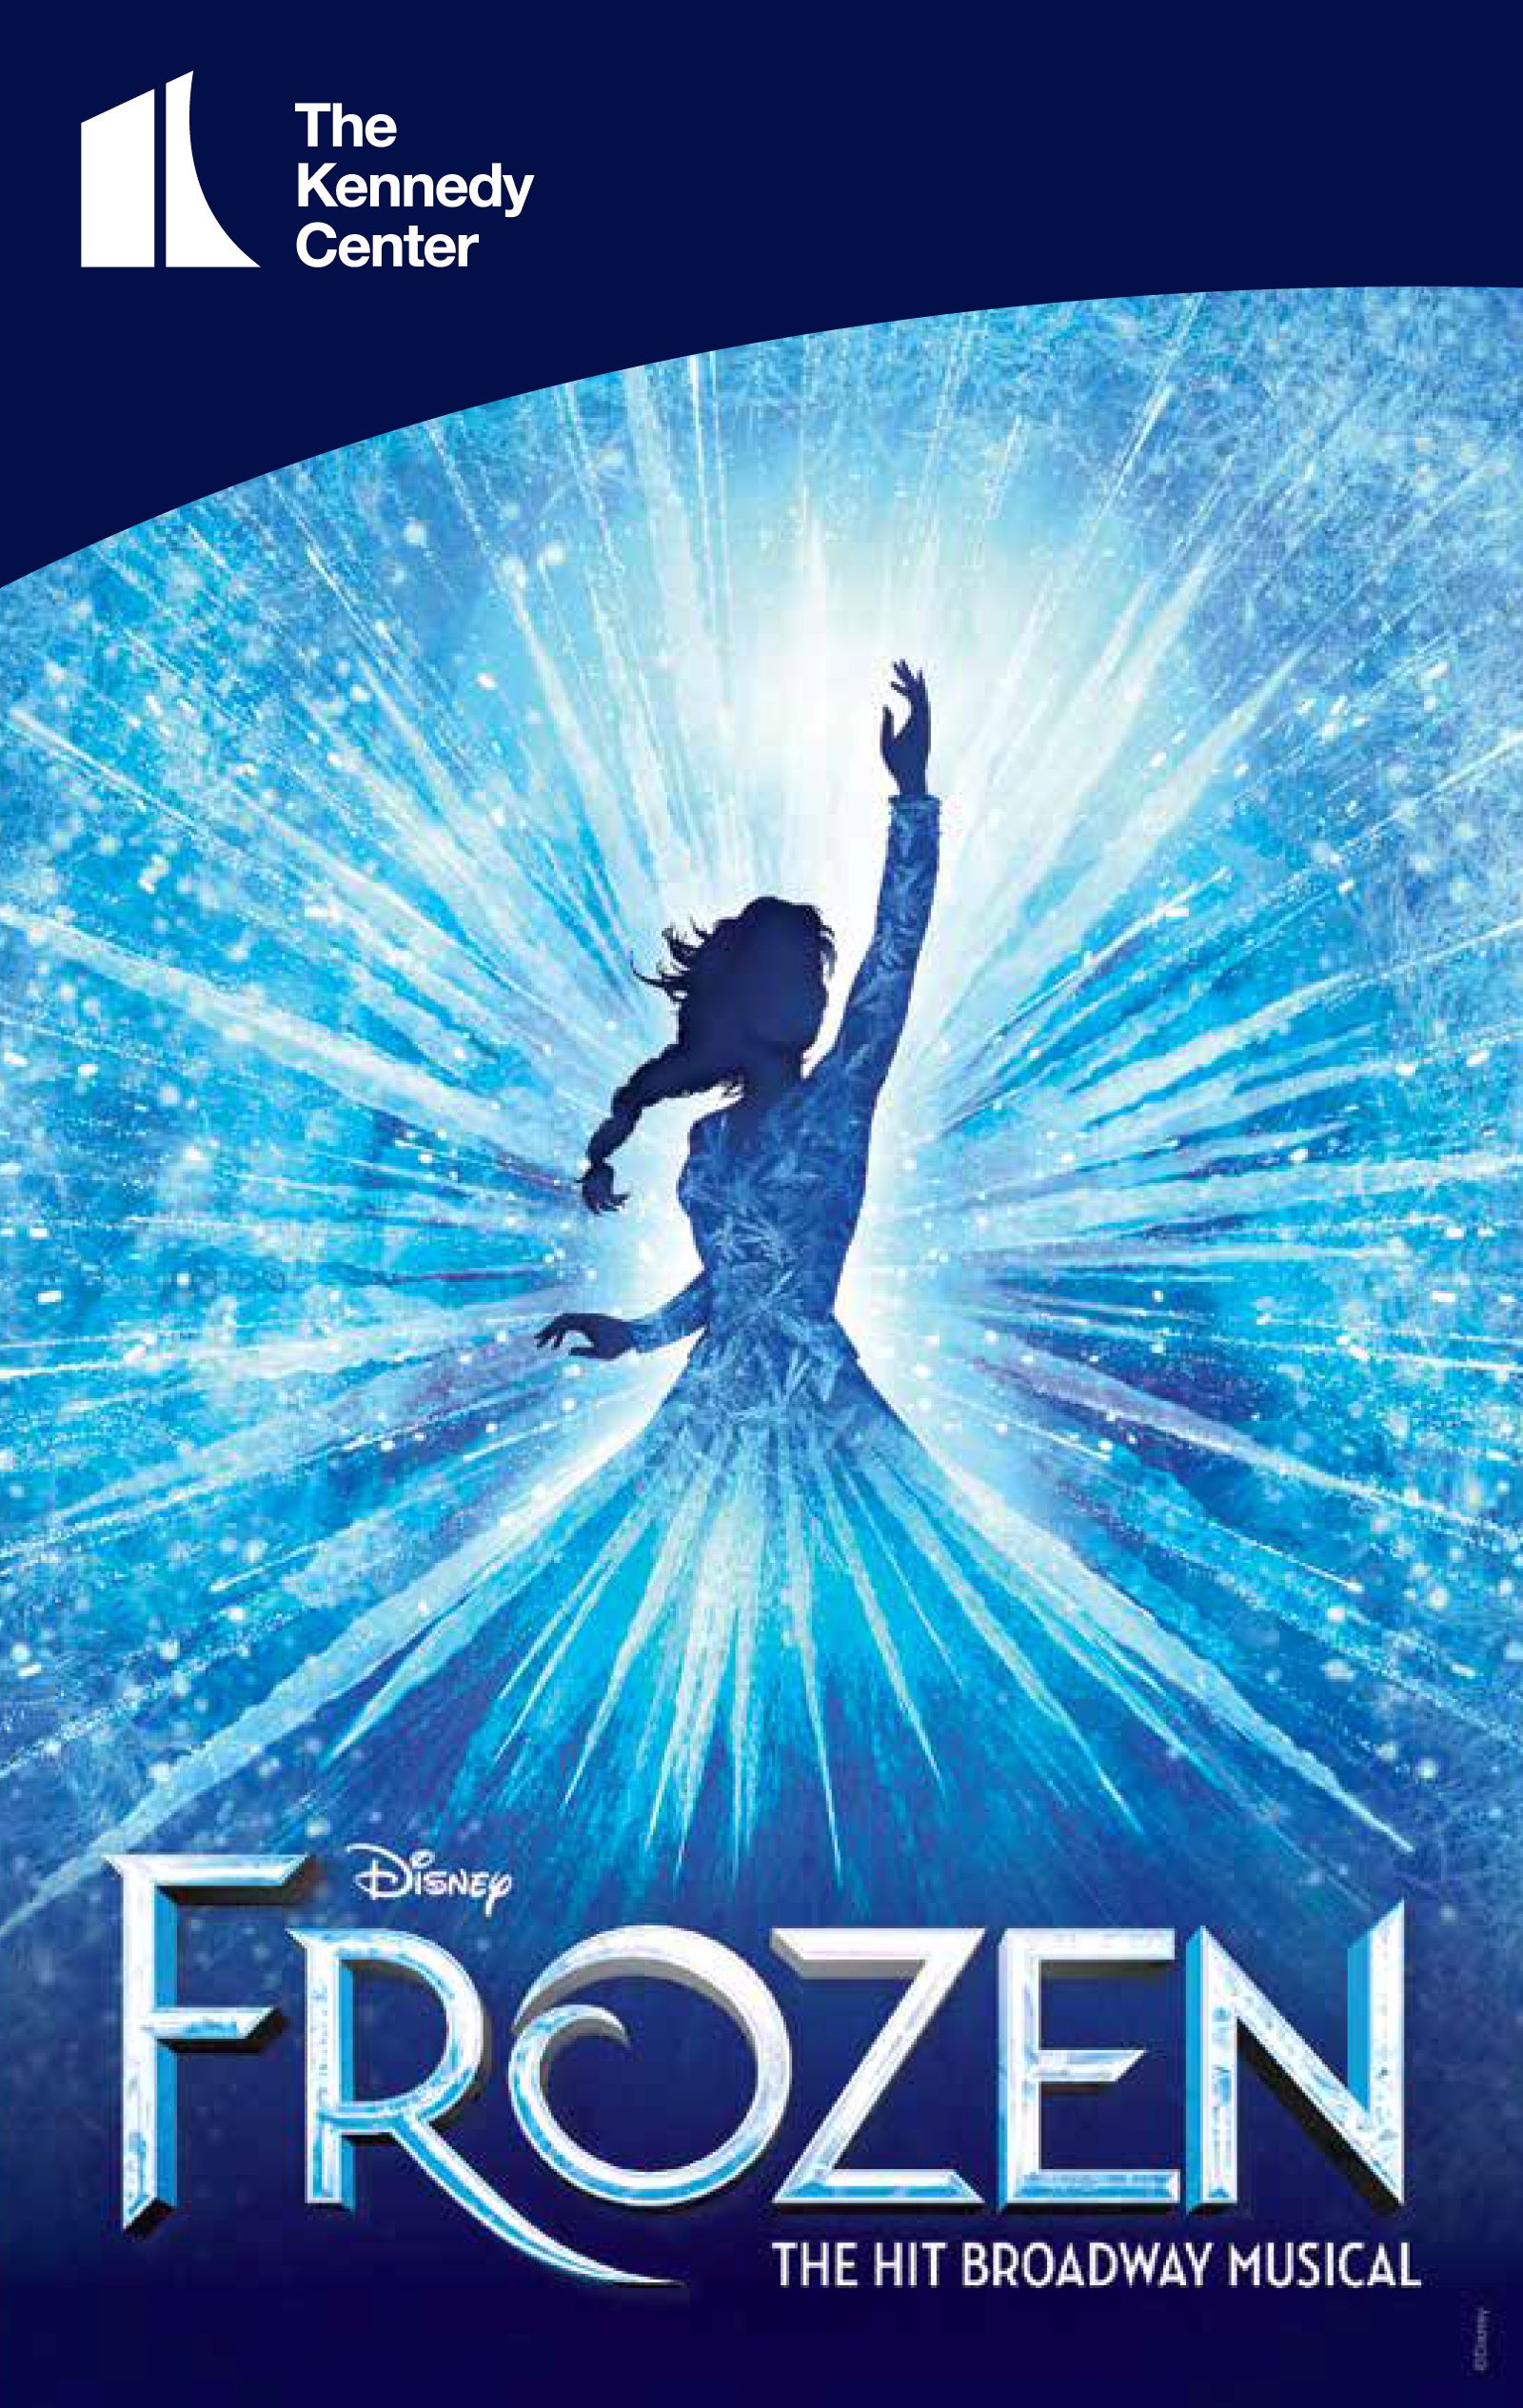 Poster Frozen - Elsa | Wall Art, Gifts & Merchandise 